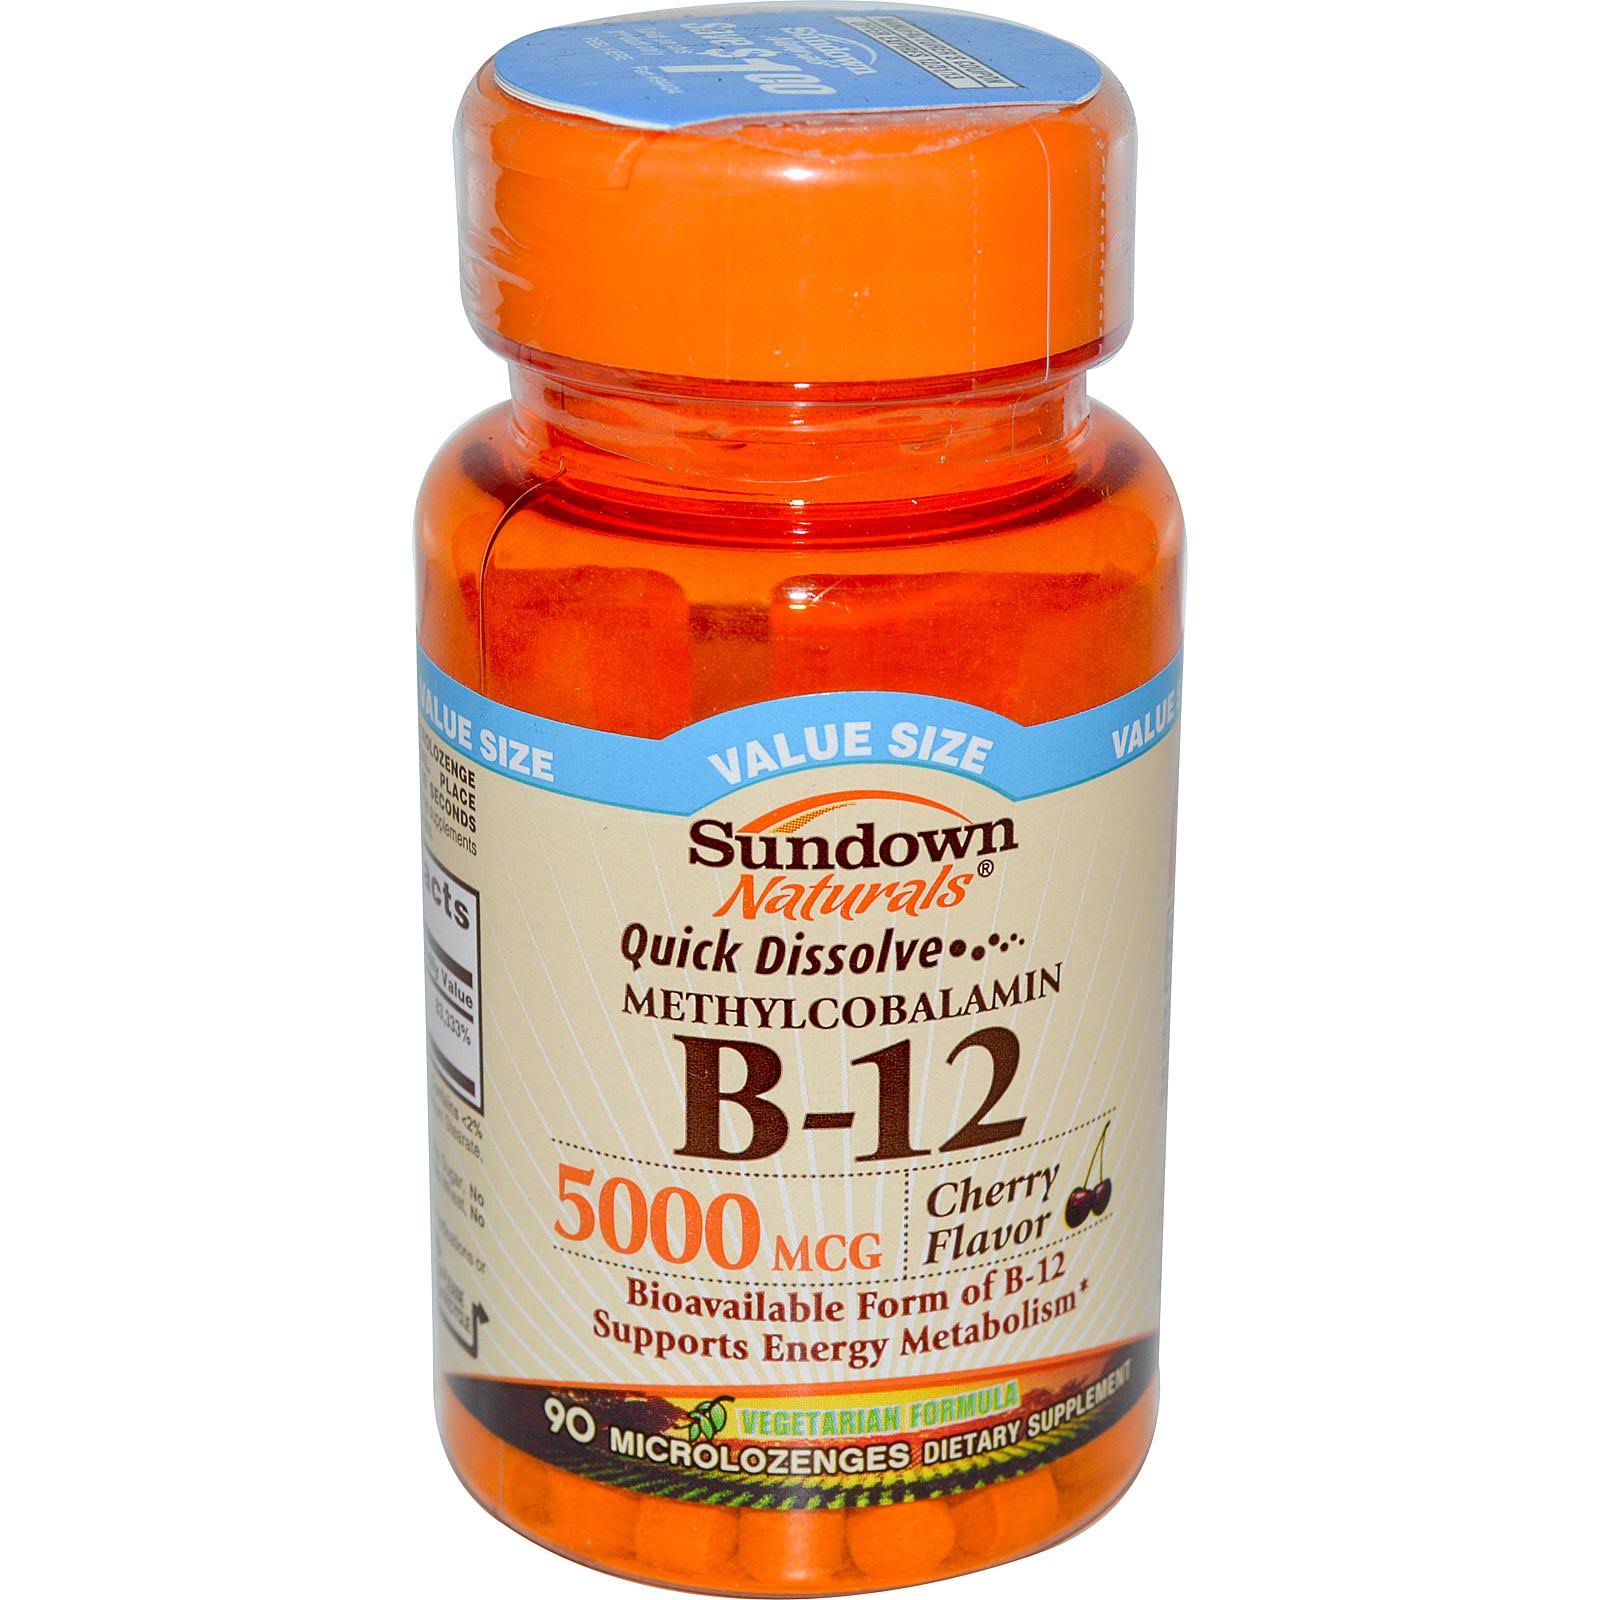 Sundown Naturals Vitamin B12 - 5000 mcg, 90 ct